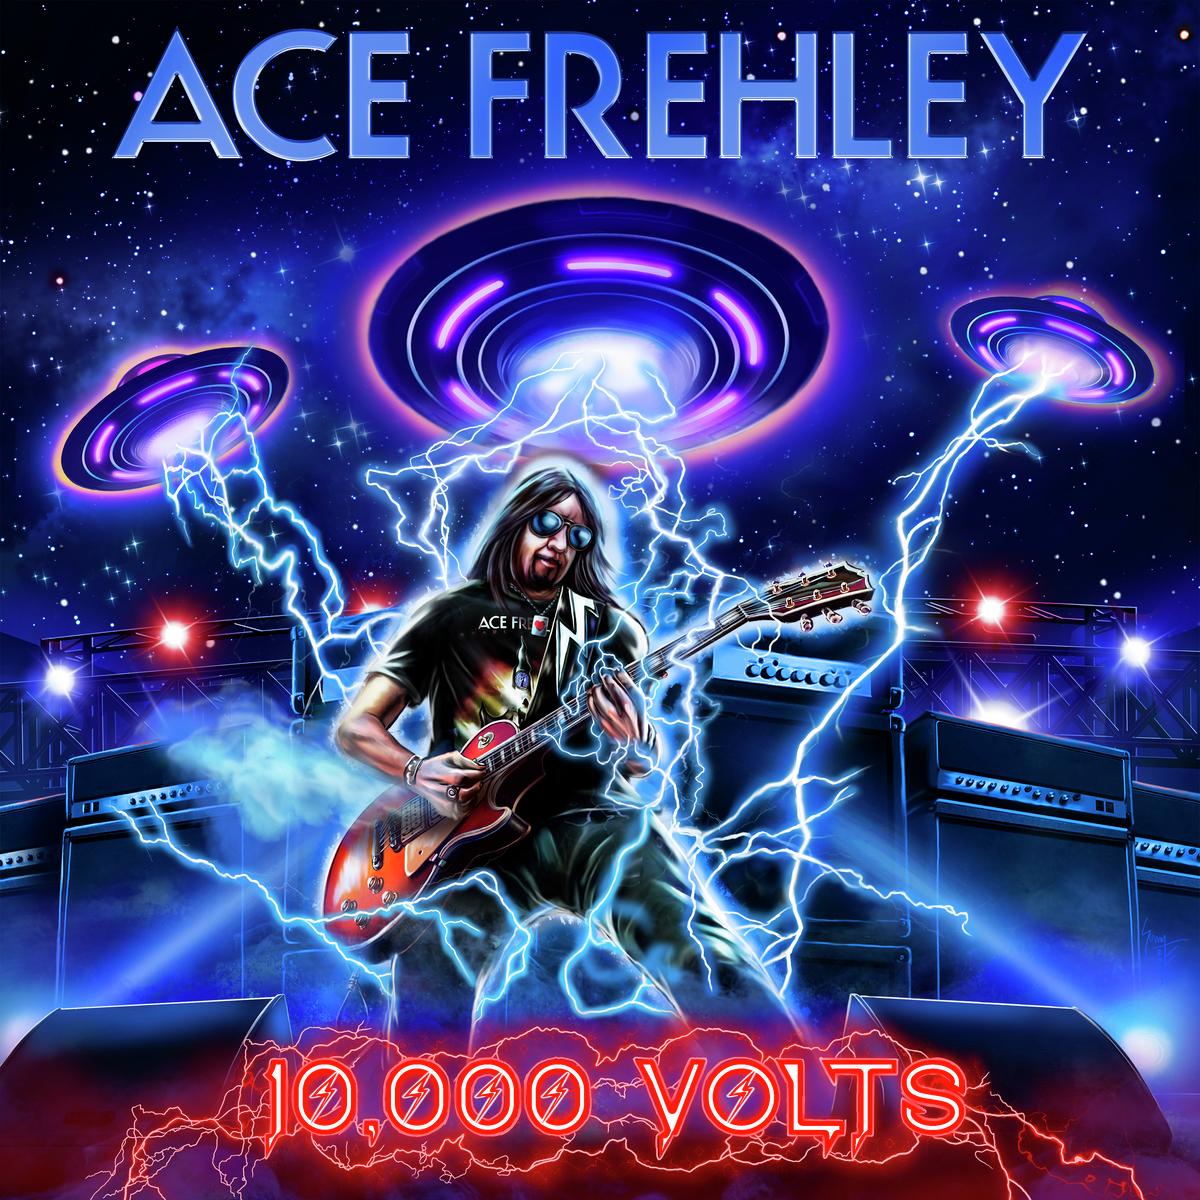 #AceFrehley Announces New Studio Album 10,000 Volts
shutter16.com/%e2%9a%a1%e2%9… #10000volts #thespaceman
#newmusic #guitarist #legend